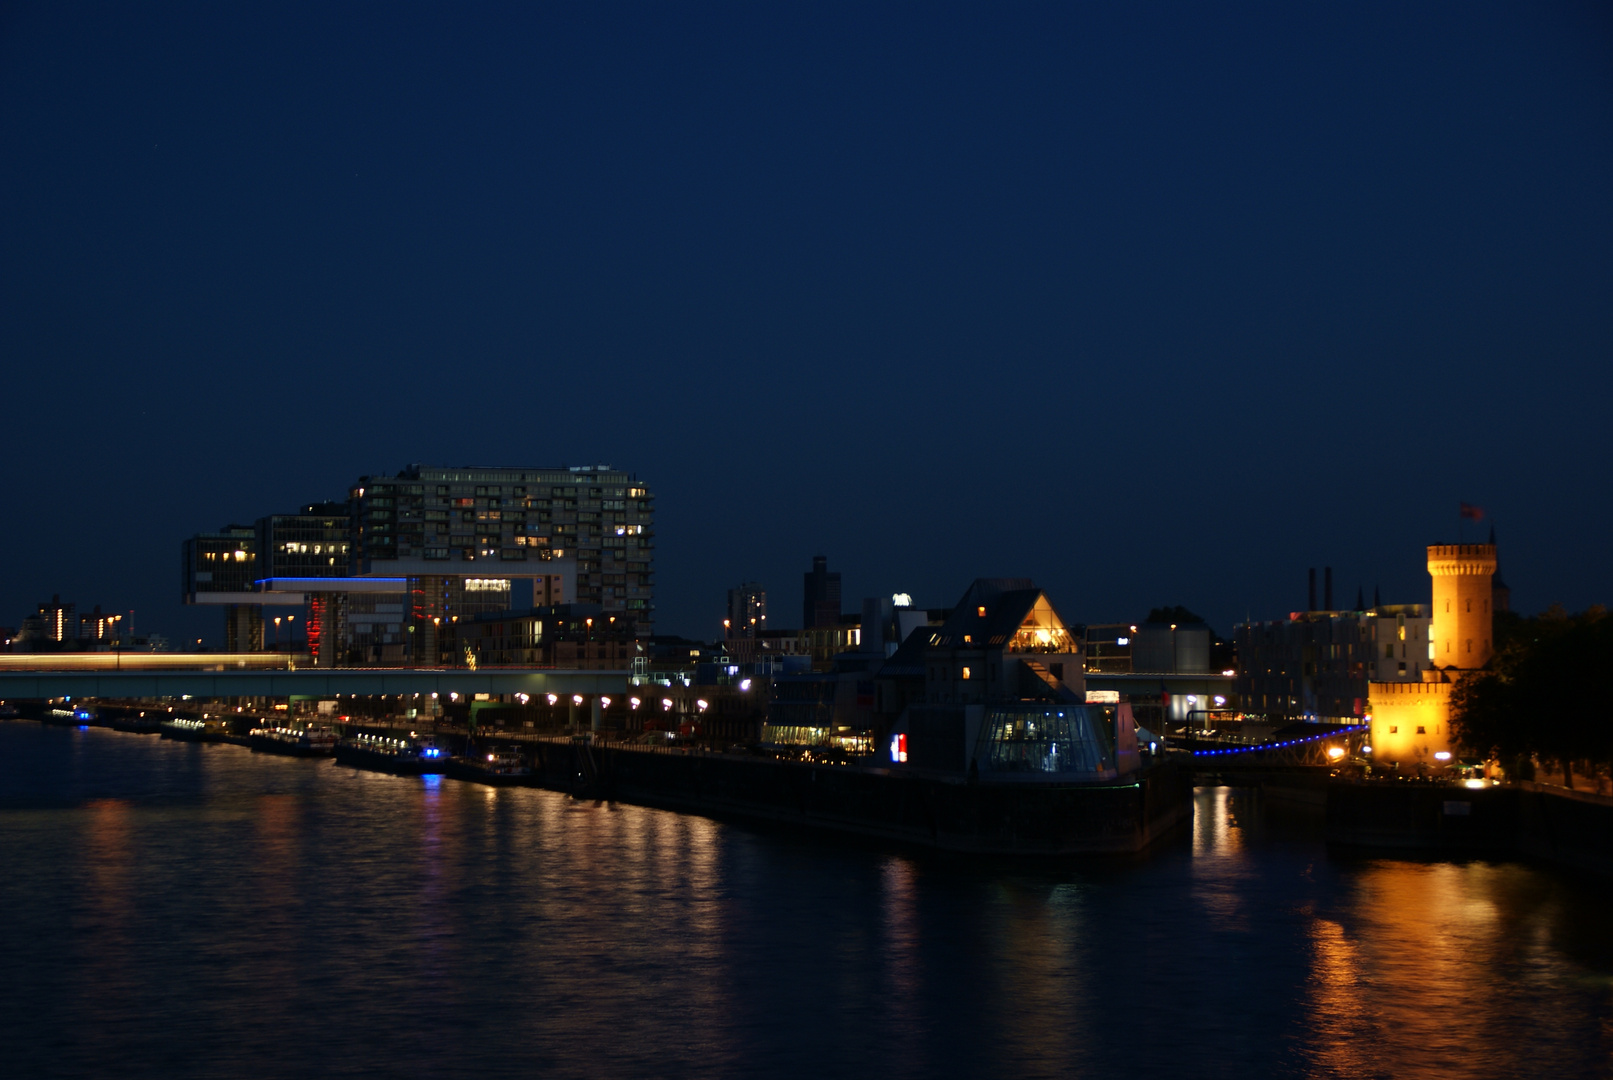 Nachtblick auf den Rheinauhafen